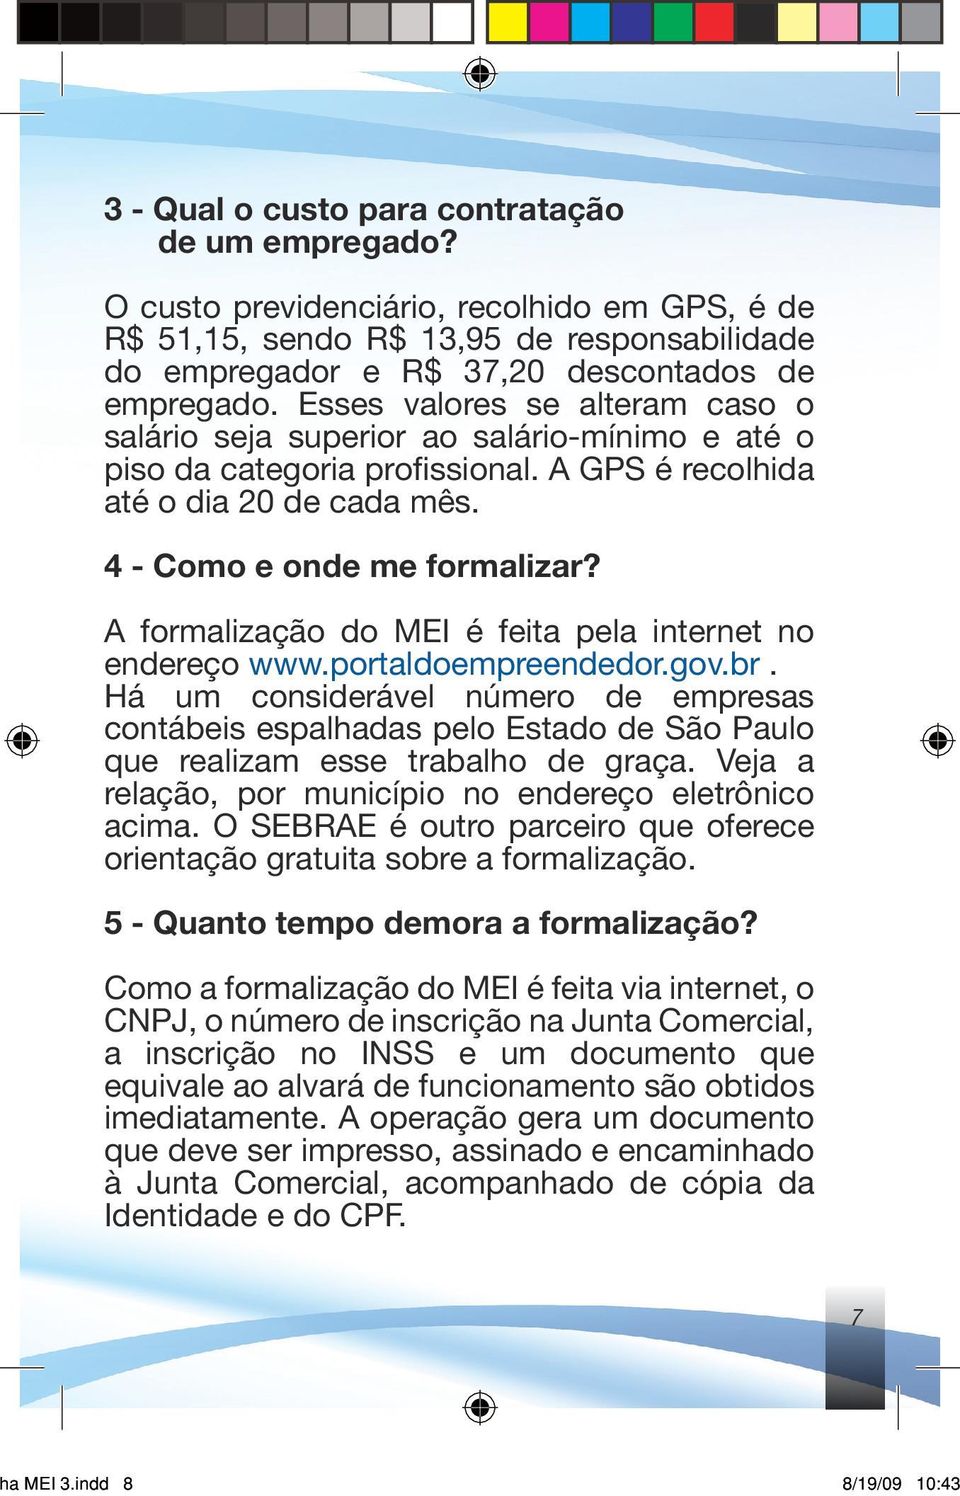 A formalização do MEI é feita pela internet no endereço www.portaldoempreendedor.gov.br.